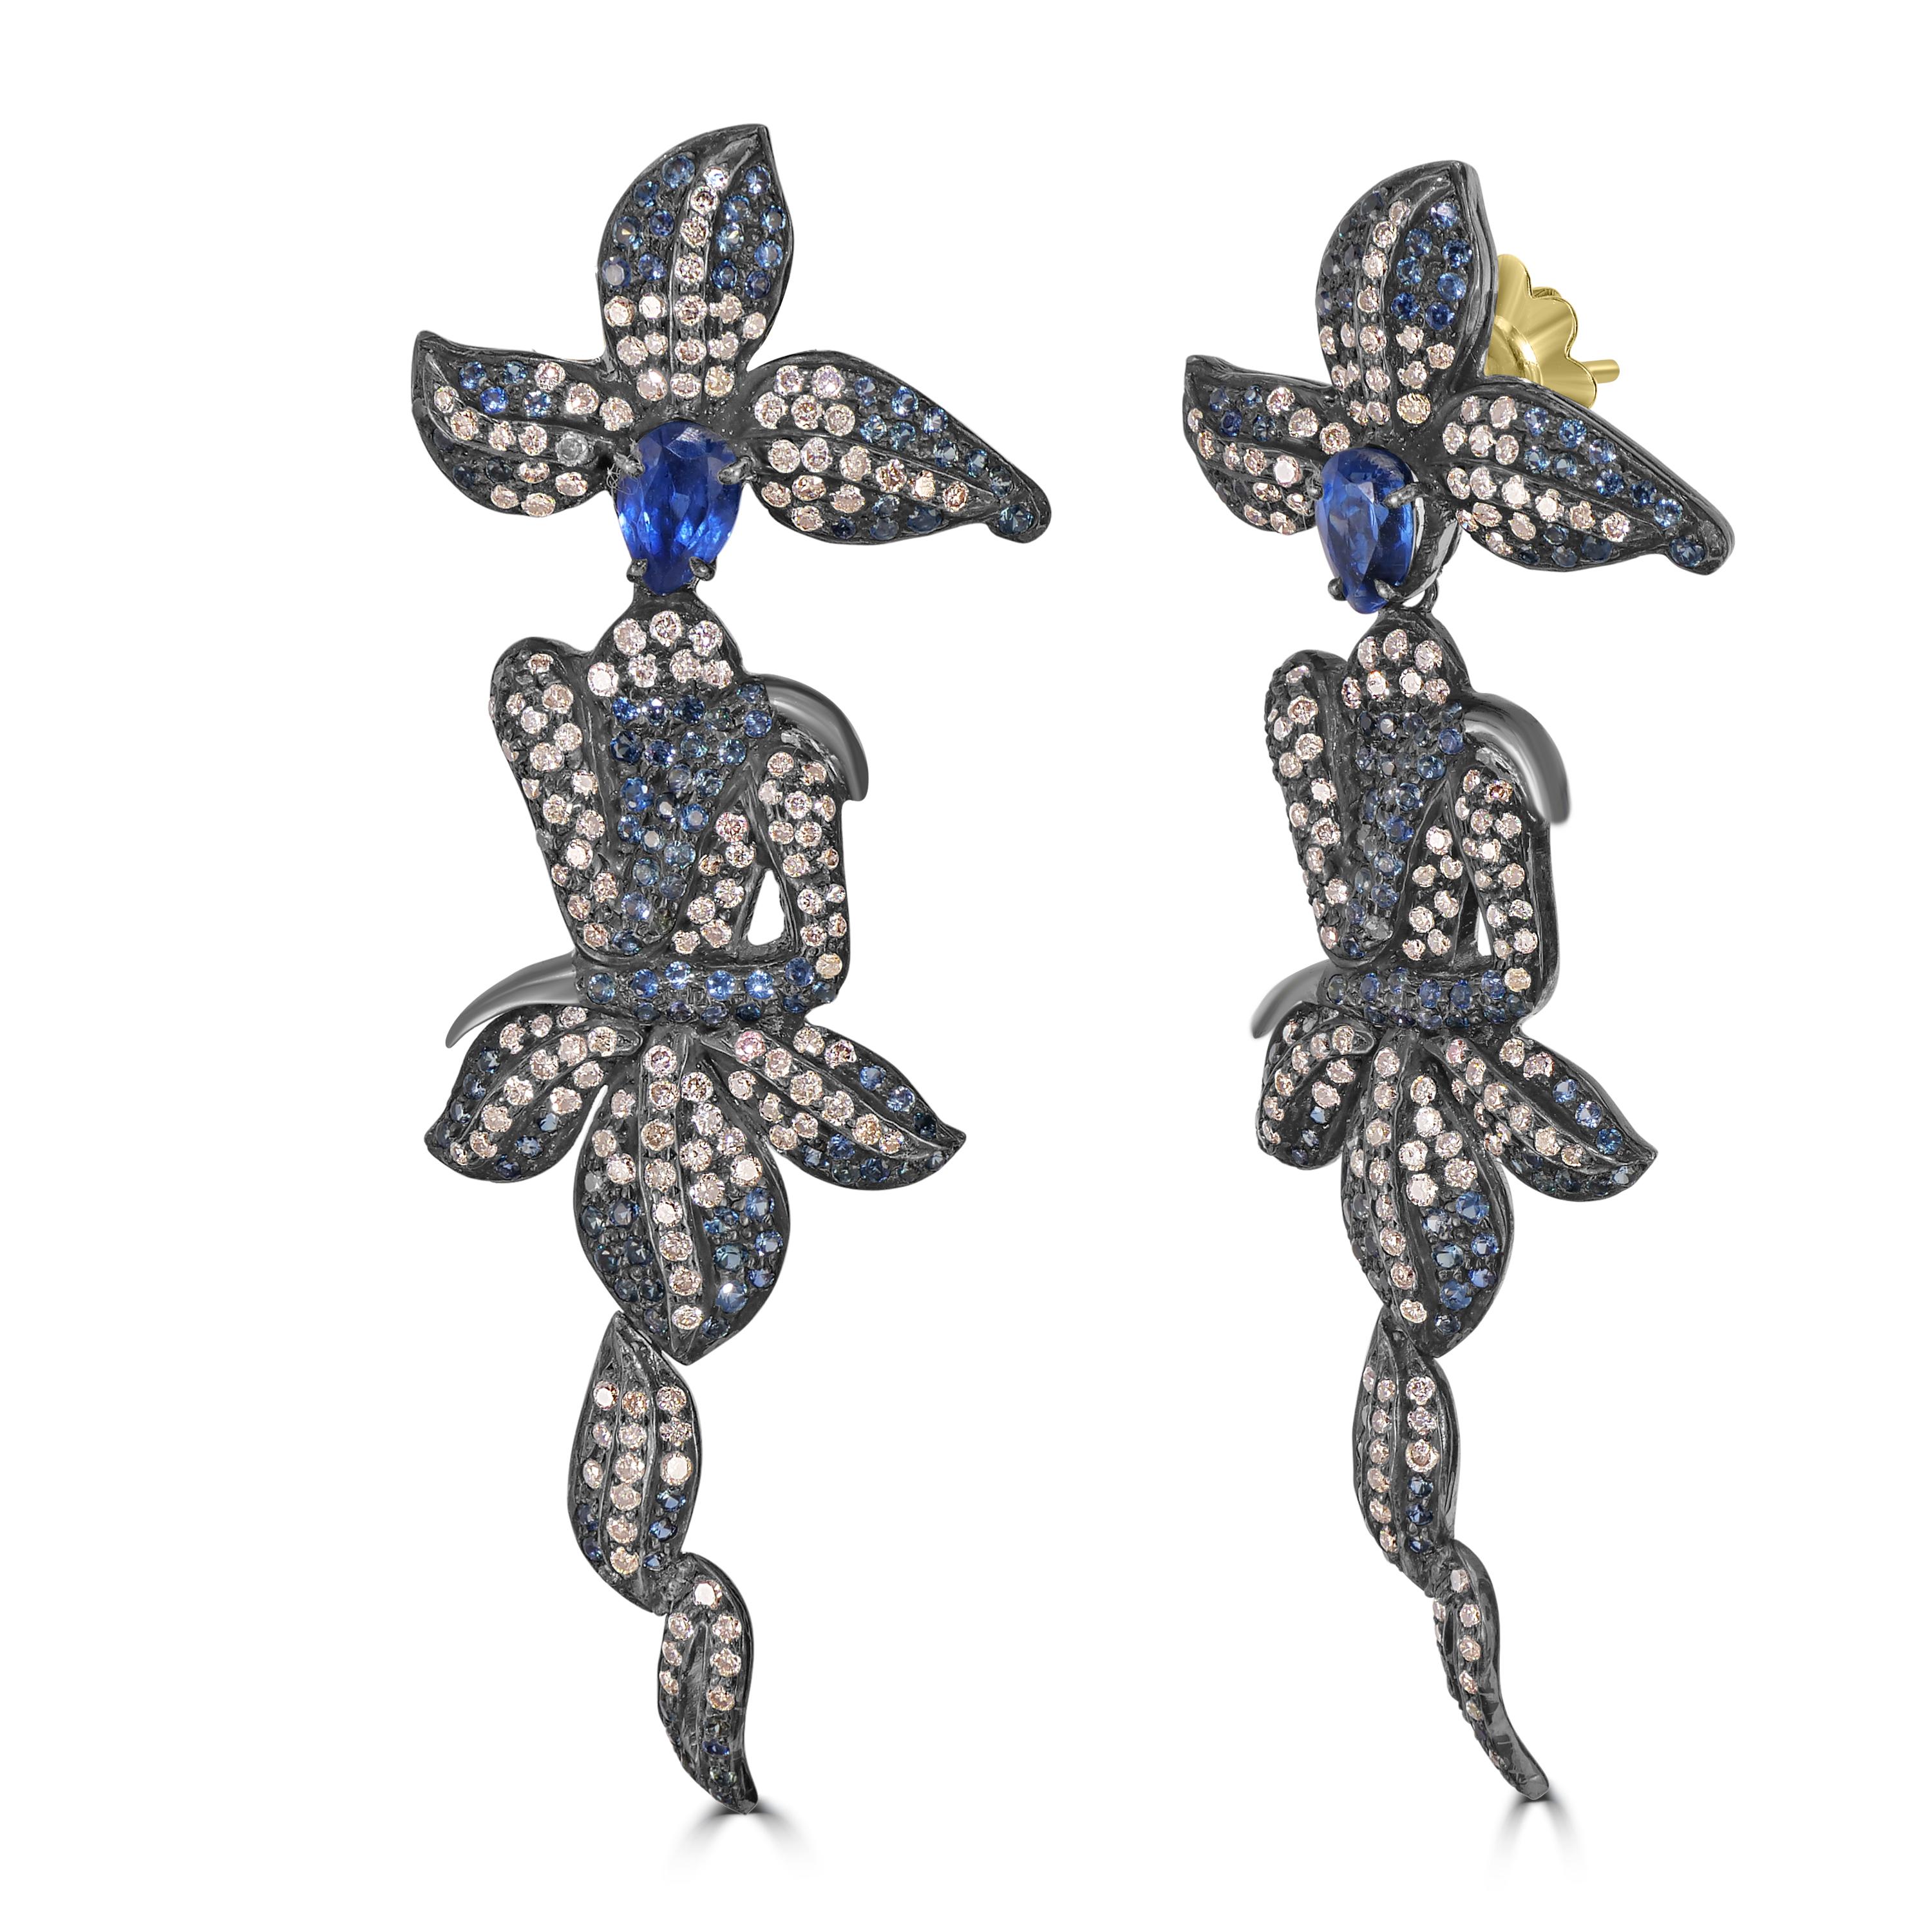 Begeben Sie sich auf eine Reise der Verzauberung mit unserem viktorianischen 4,64 Cttw. Kyanit-, Diamant- und blauer Saphir-Kronleuchter-Ohrringe, eine fesselnde Mischung aus von der Natur inspiriertem Design und erlesenen Edelsteinen. 

Die